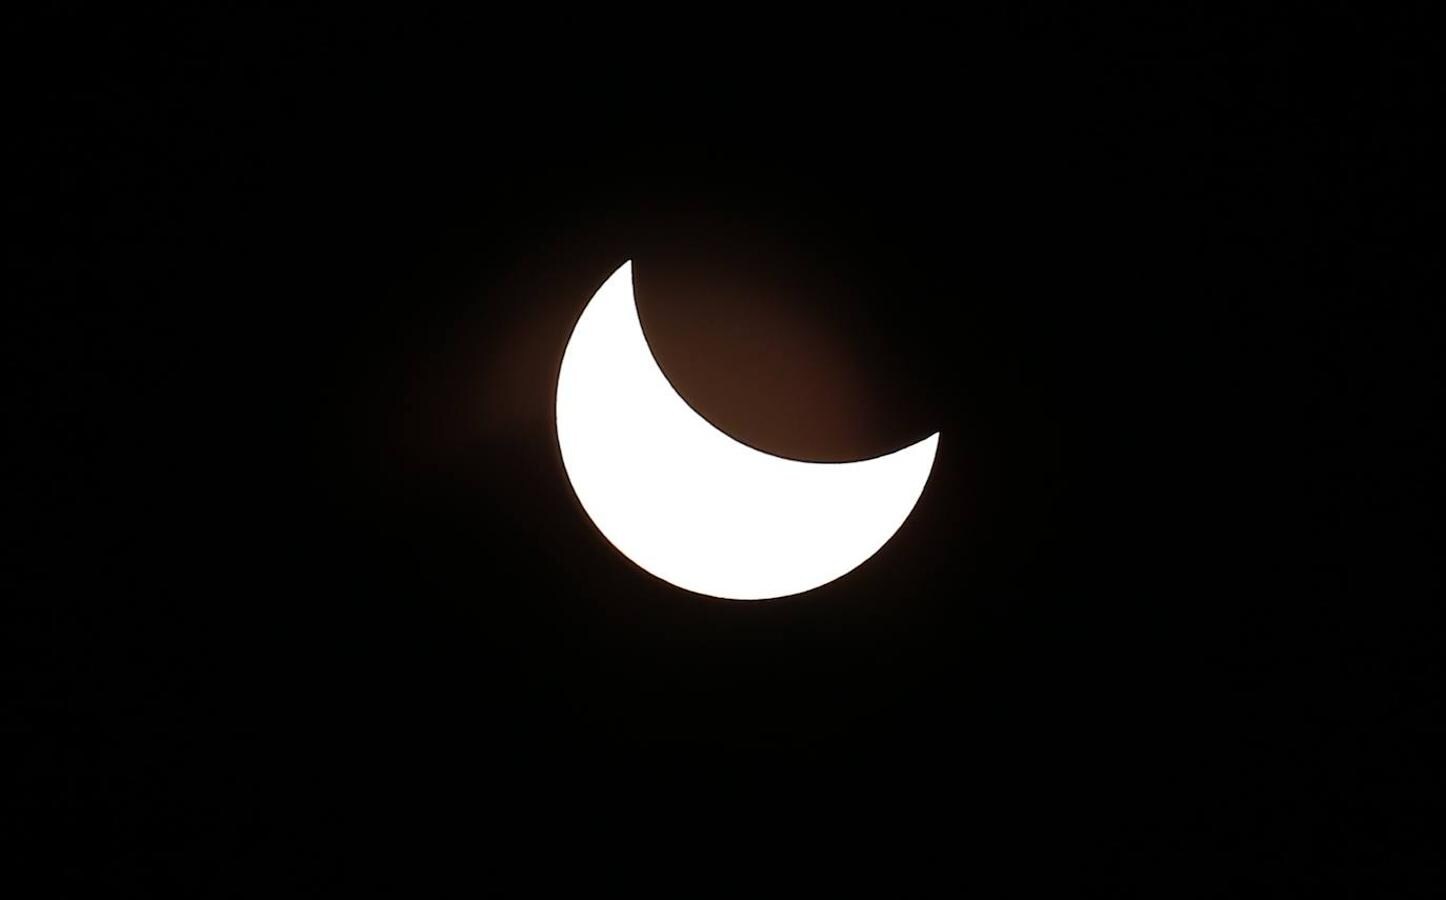 Así se vio el gran eclipse sudamericano. Es el único eclipse solar total del año. Comenzó su camino en el Pacífico sur, cerca de la isla Pitcaerin, y terminó en tierra habiendo tocado solo dos países: Chile y Argentina